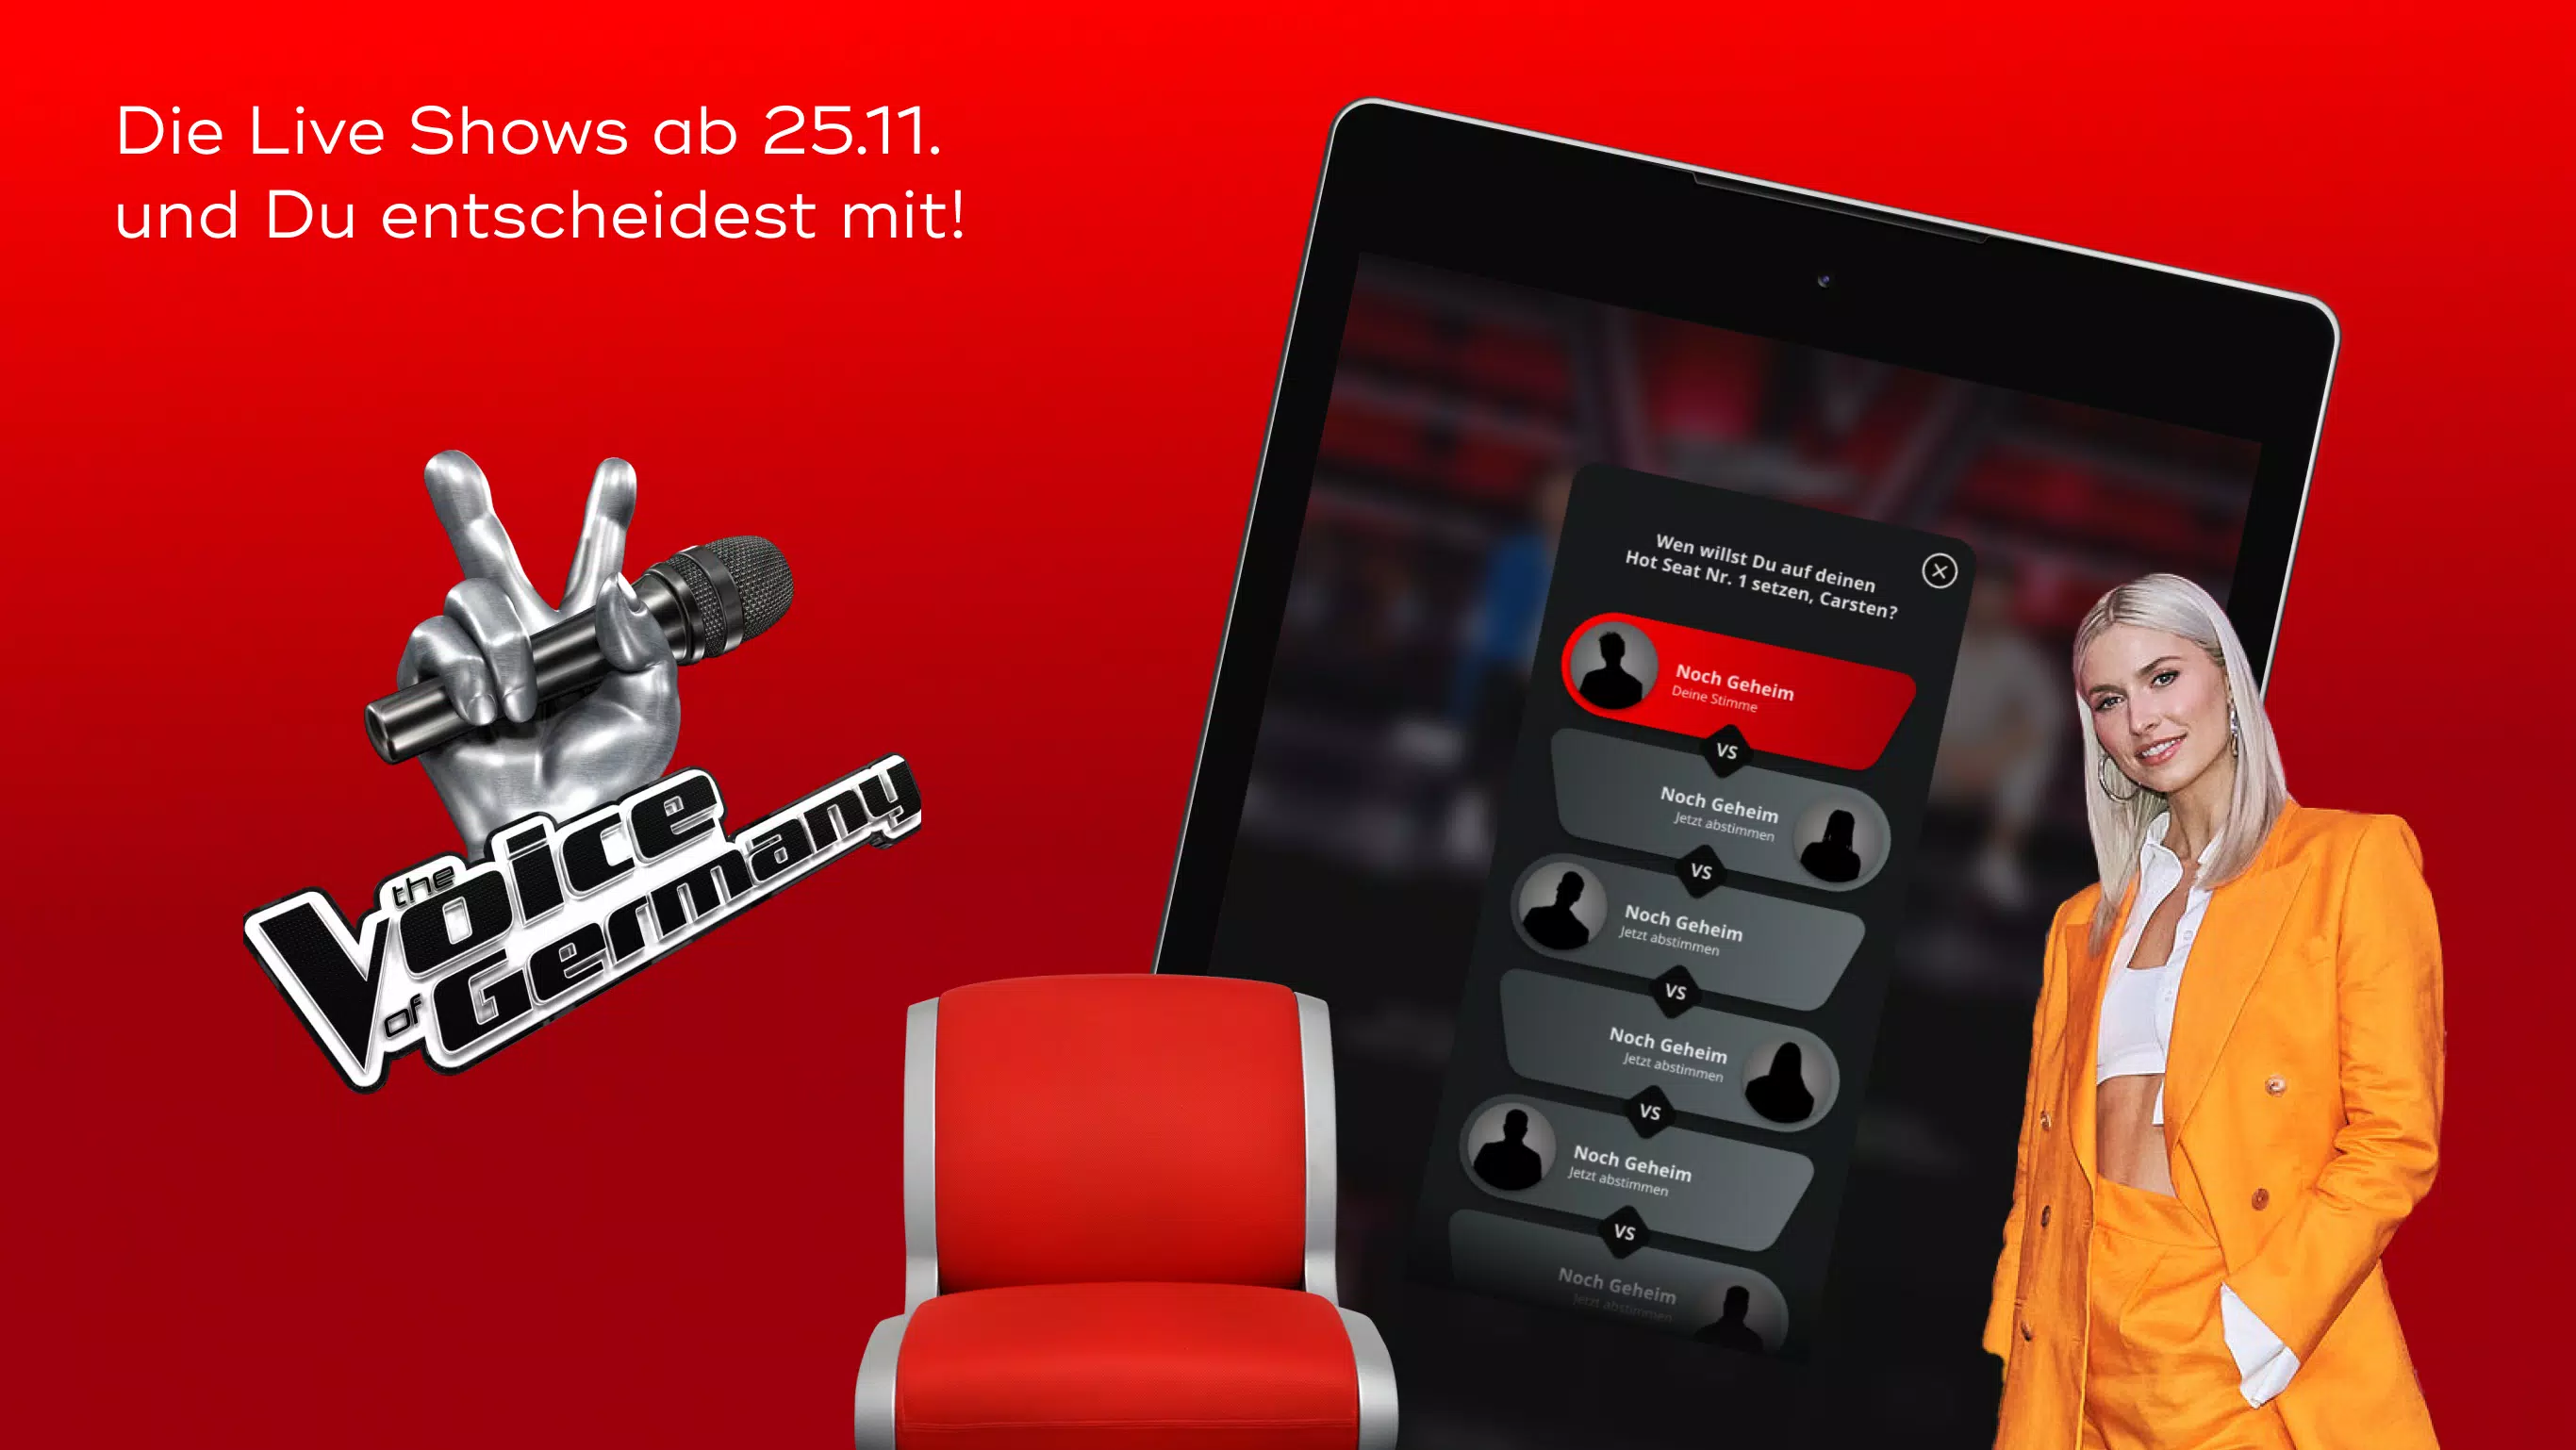 SAT.1 - Live TV und Mediathek for Android - APK Download